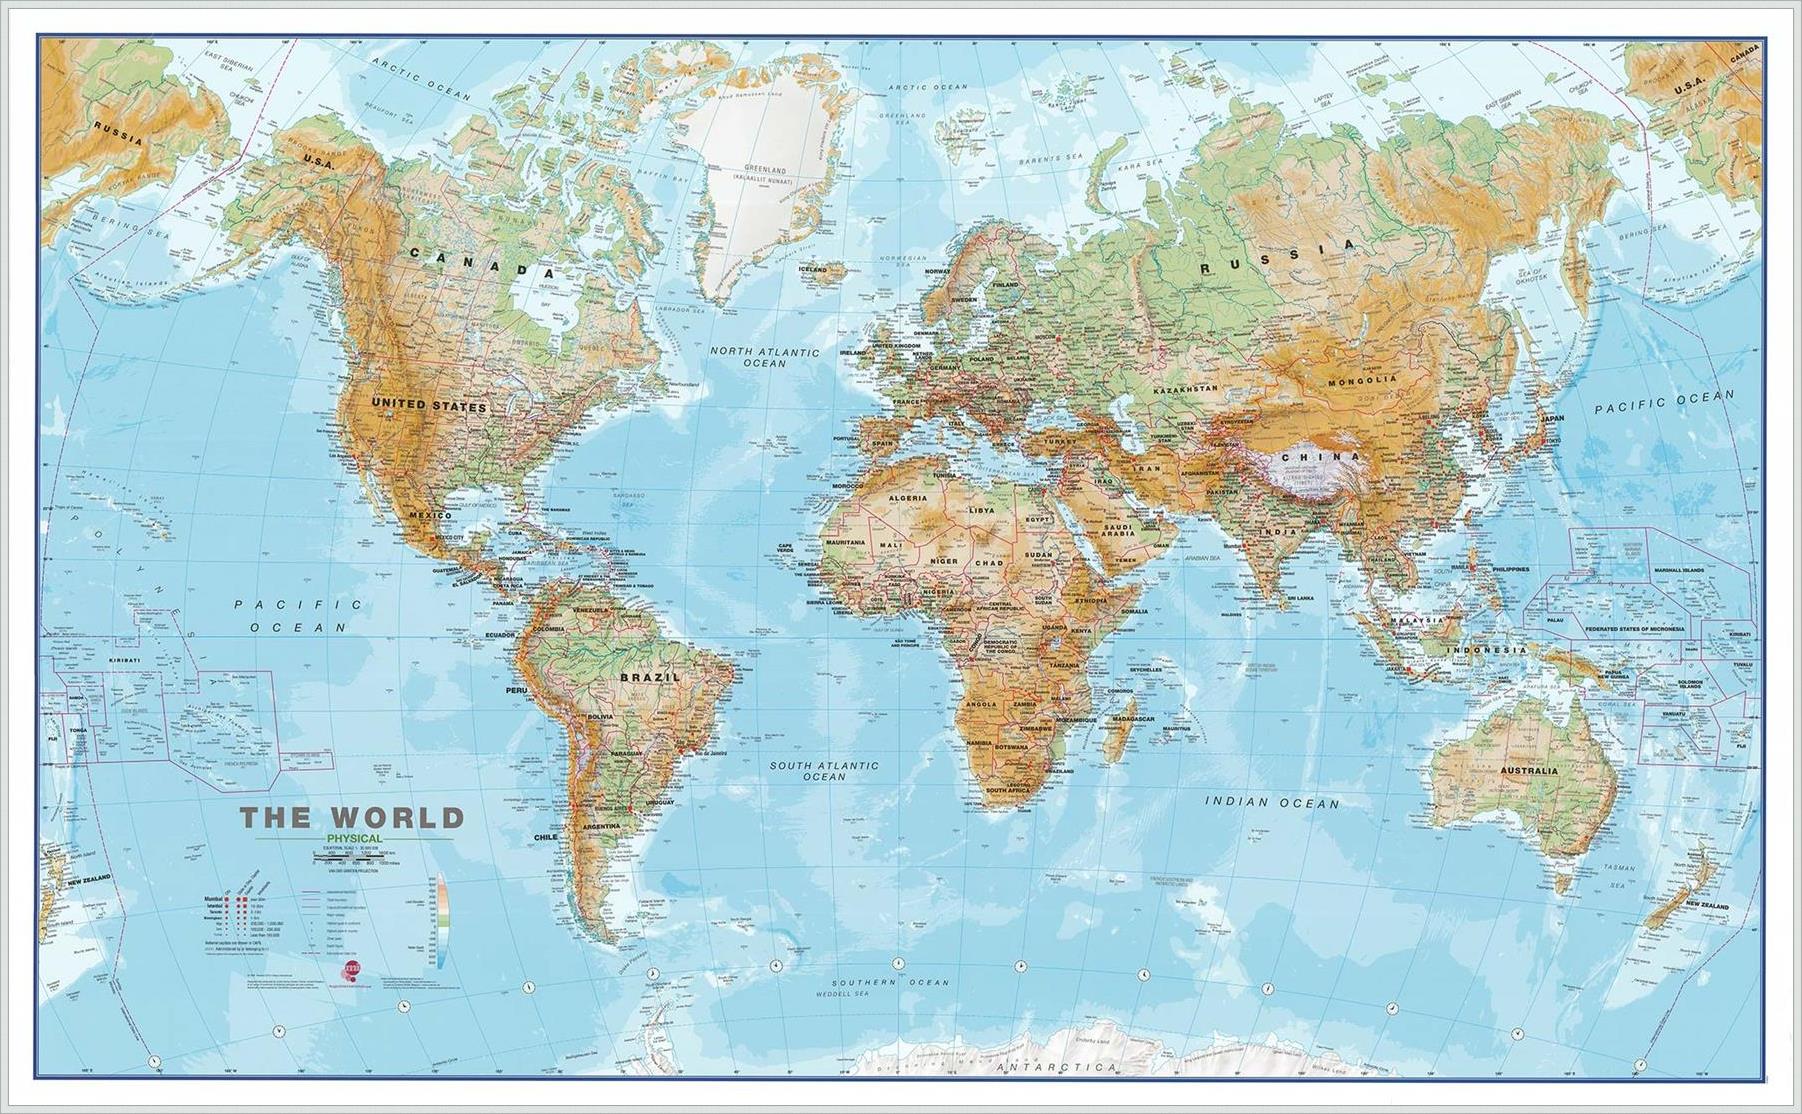 Fyzická nástěnná mapa světa CE30